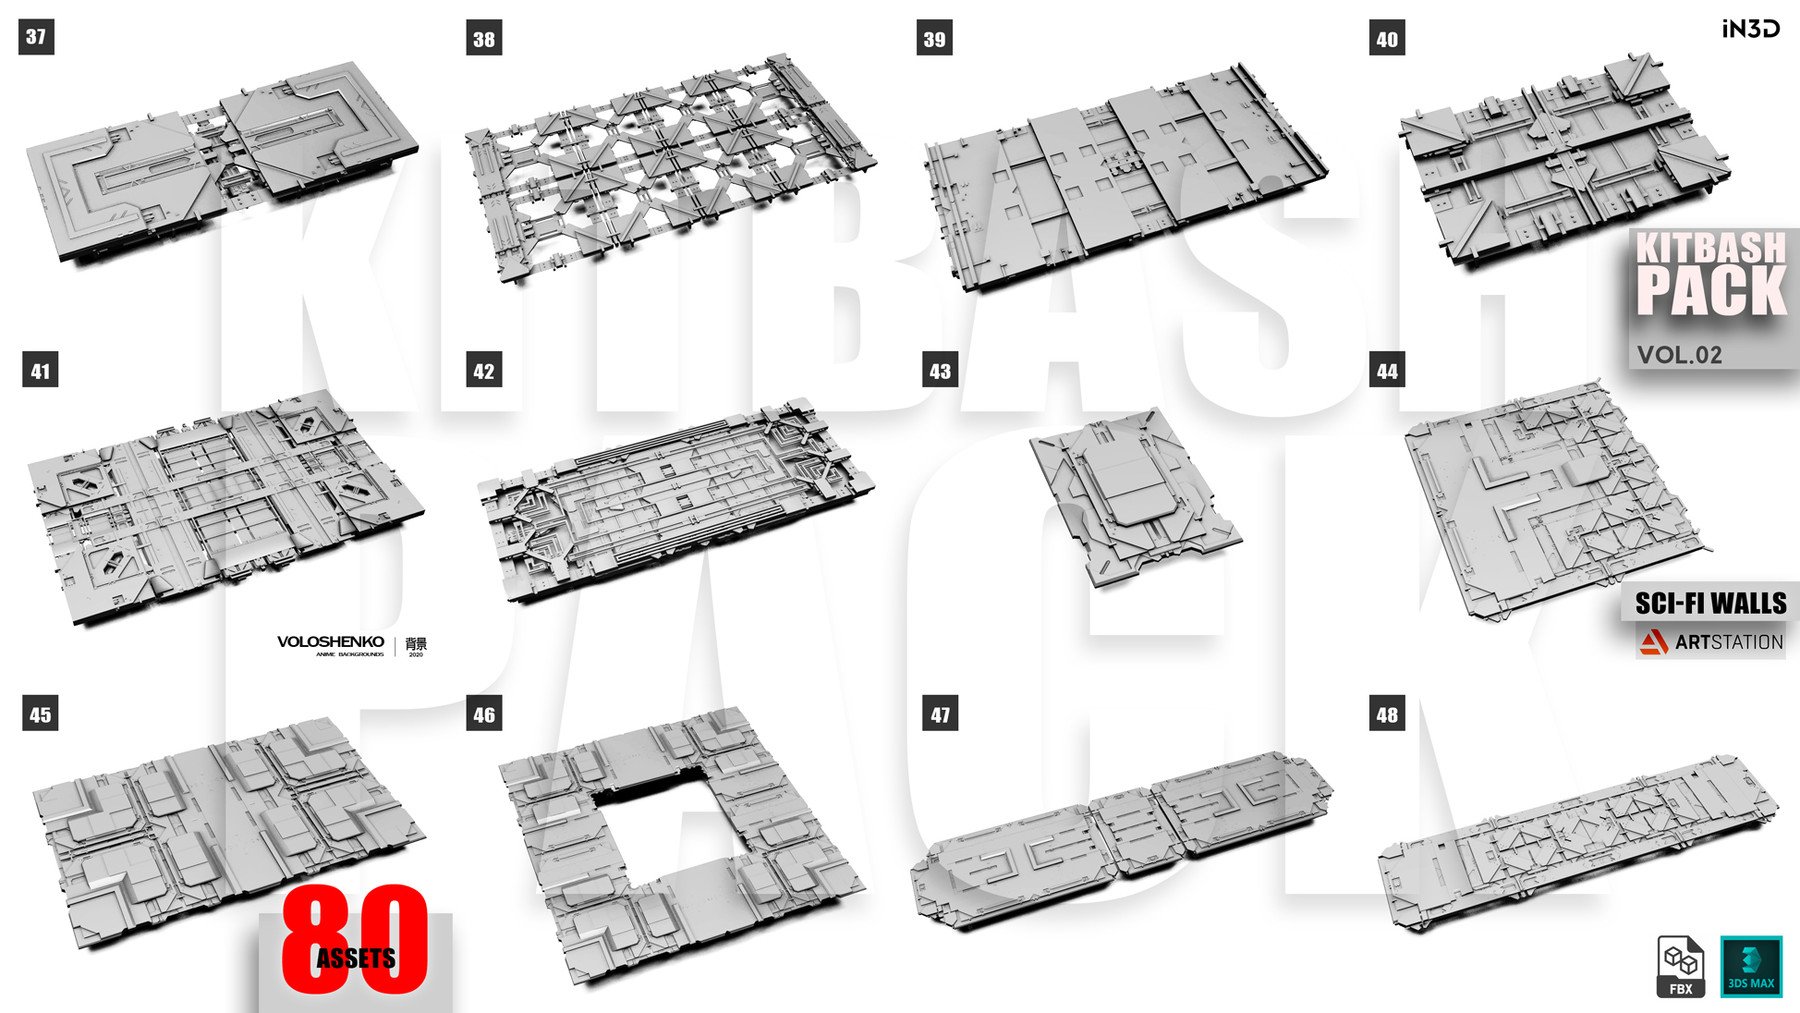 1372 未来科幻太空星际墙体舱门3D模型素材包 Hardsurface – Sci-Fi Walls Pack Vol 2 80